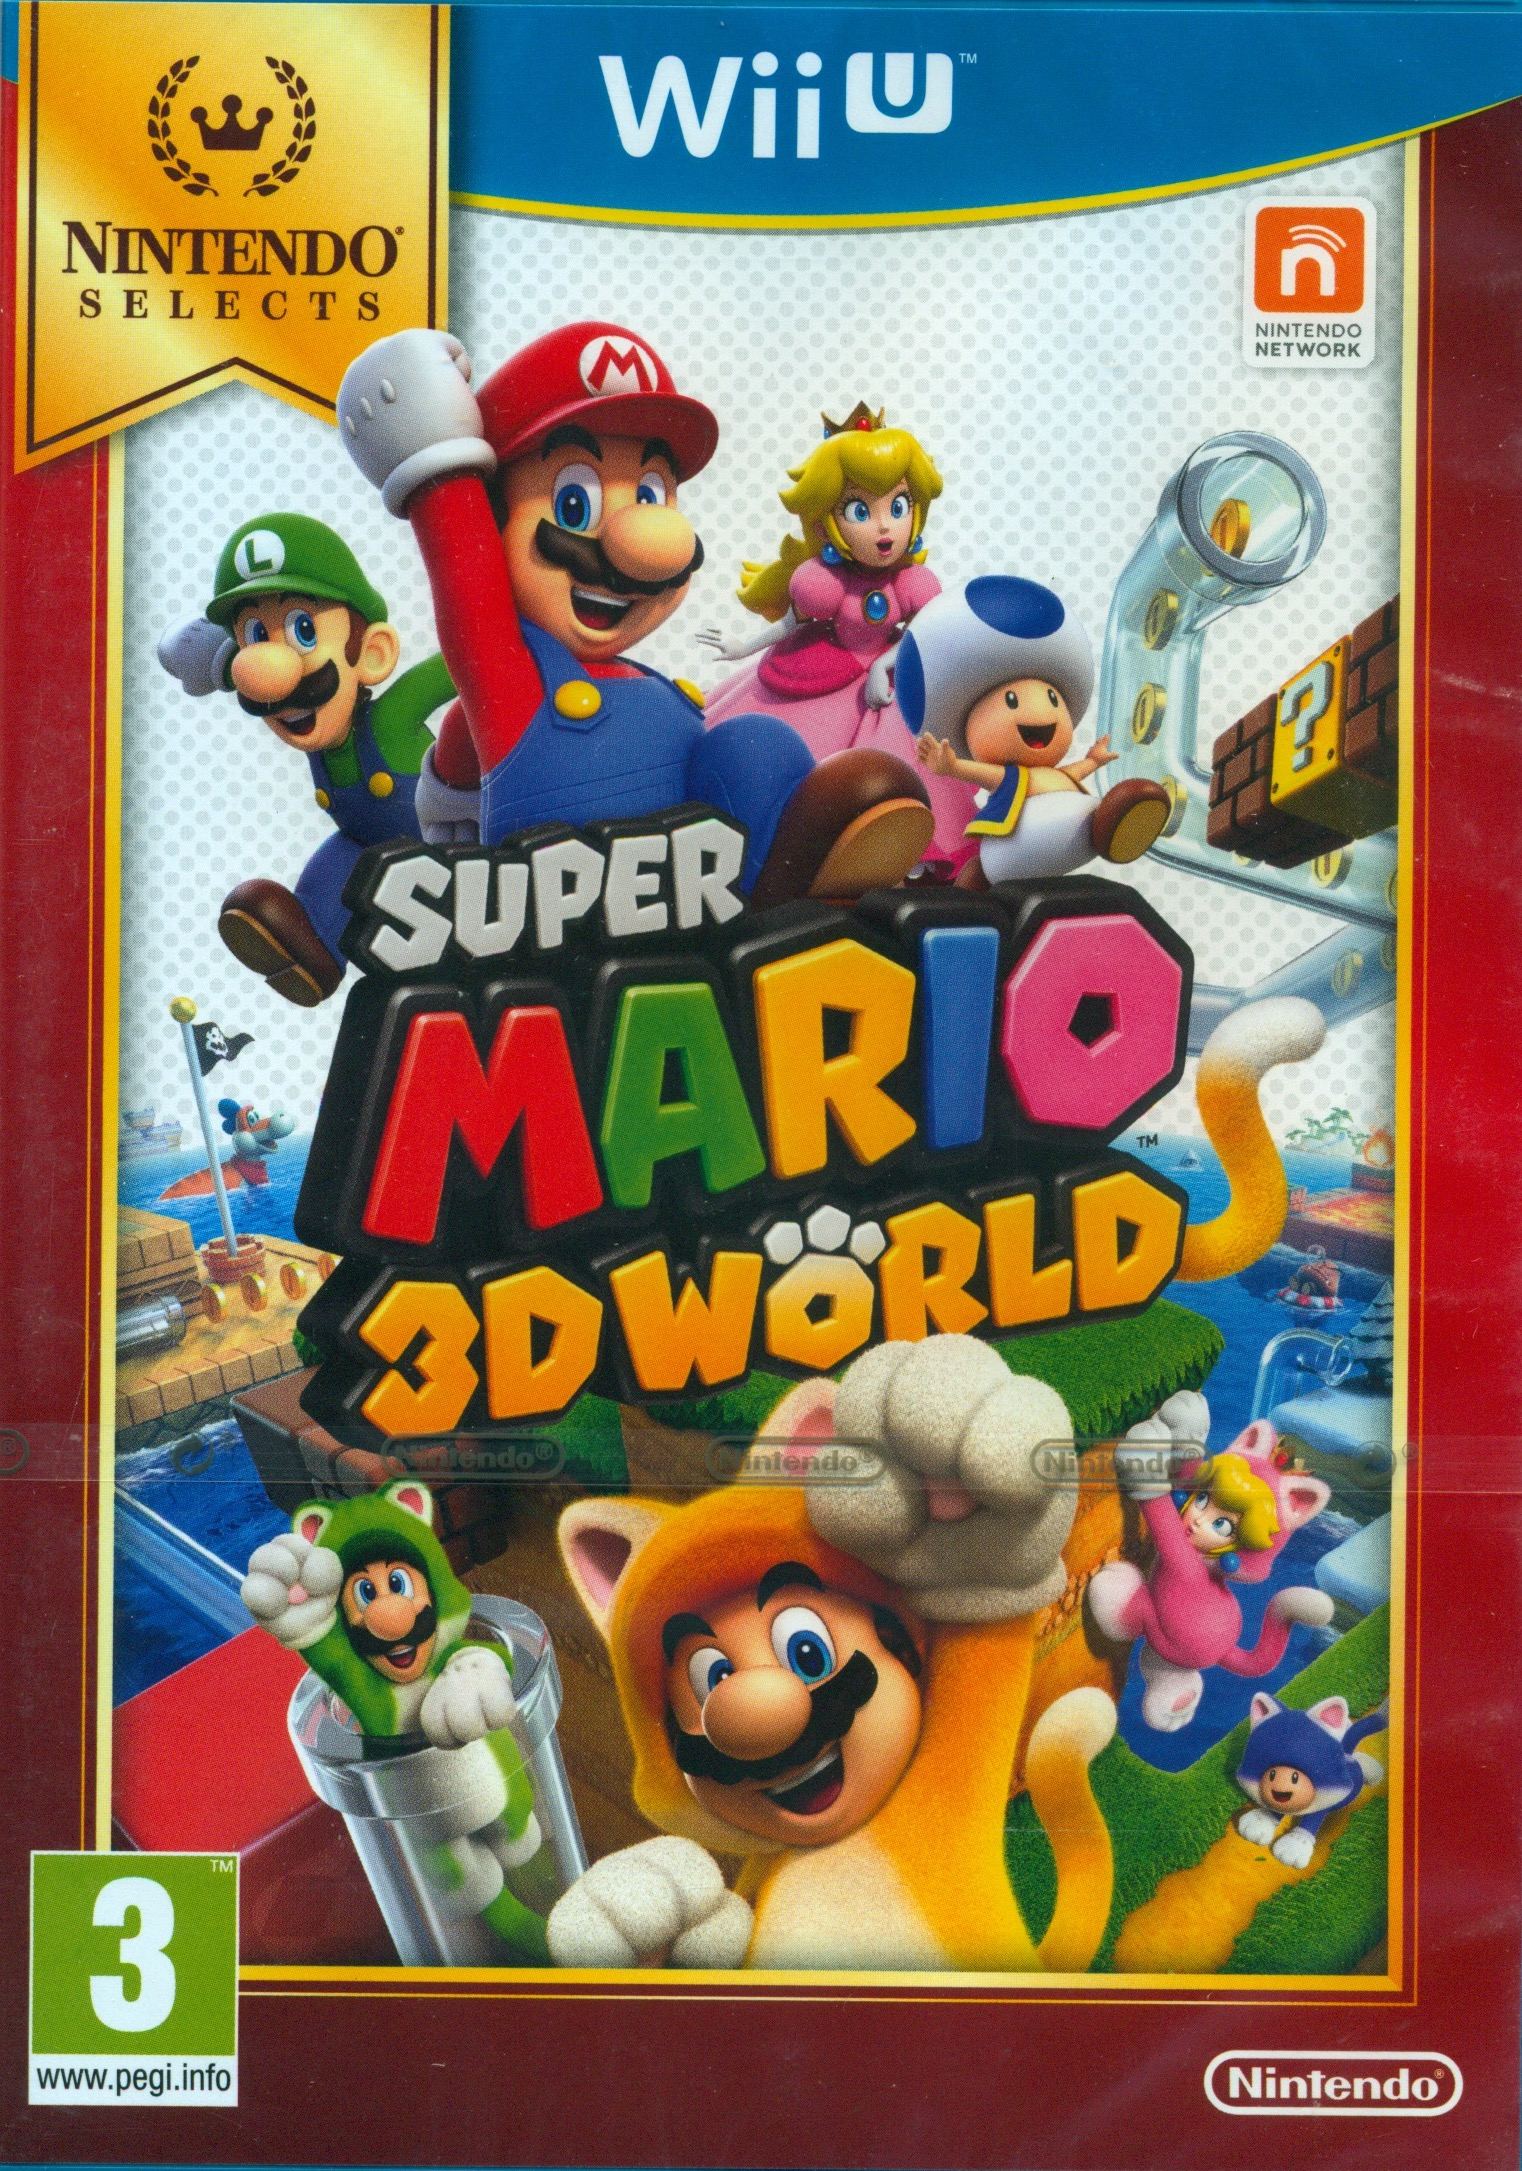 Brace nederlag Træde tilbage Super Mario 3D World (Nintendo Selects) for Wii U